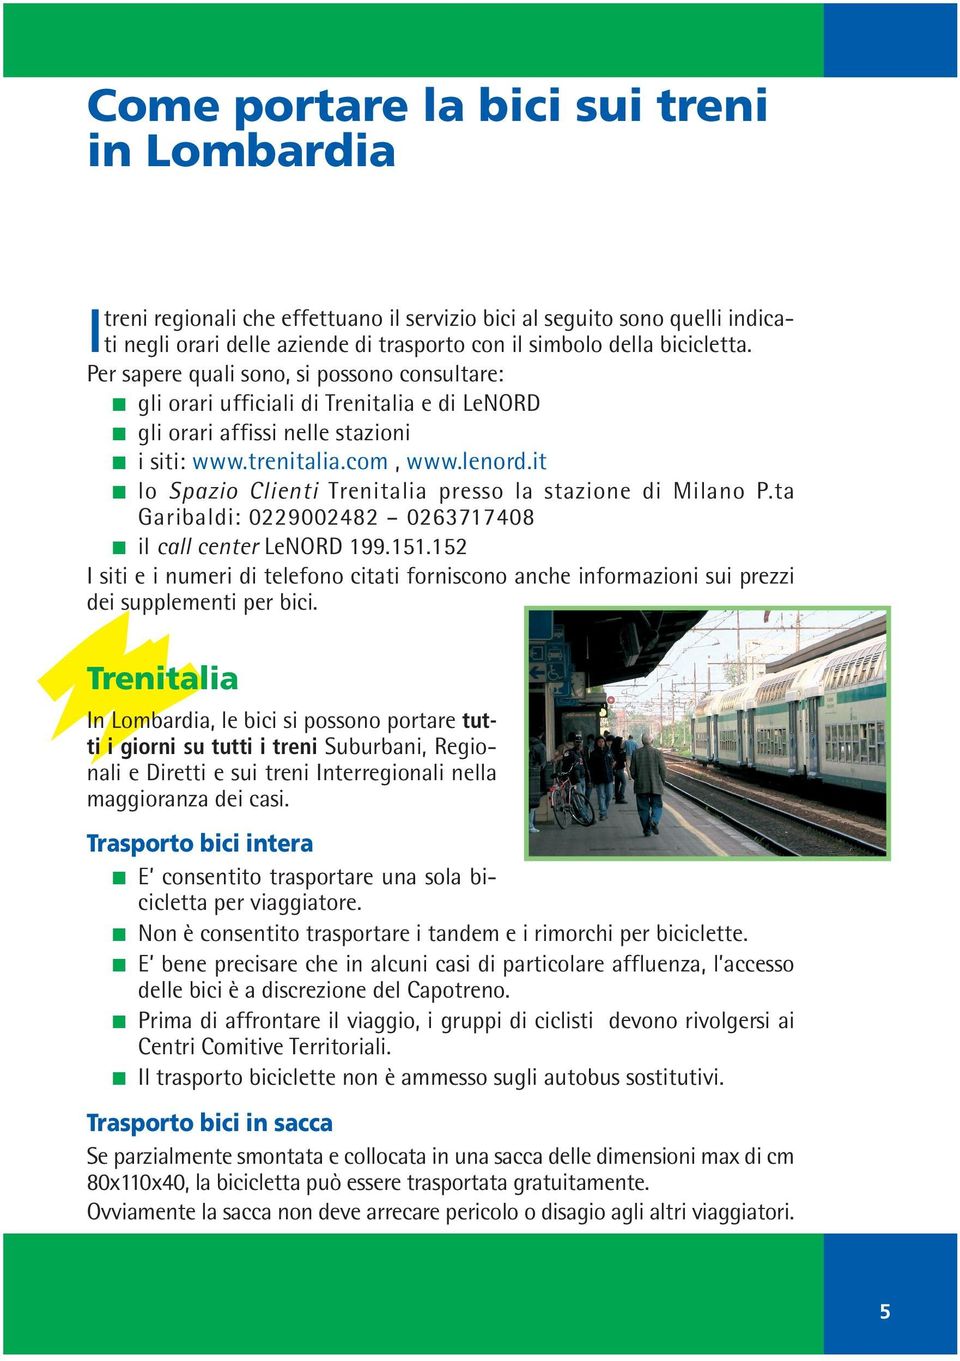 it lo Spazio Clienti Trenitalia presso la stazione di Milano P.ta Garibaldi: 0229002482 0263717408 il call center LeNORD 199.151.